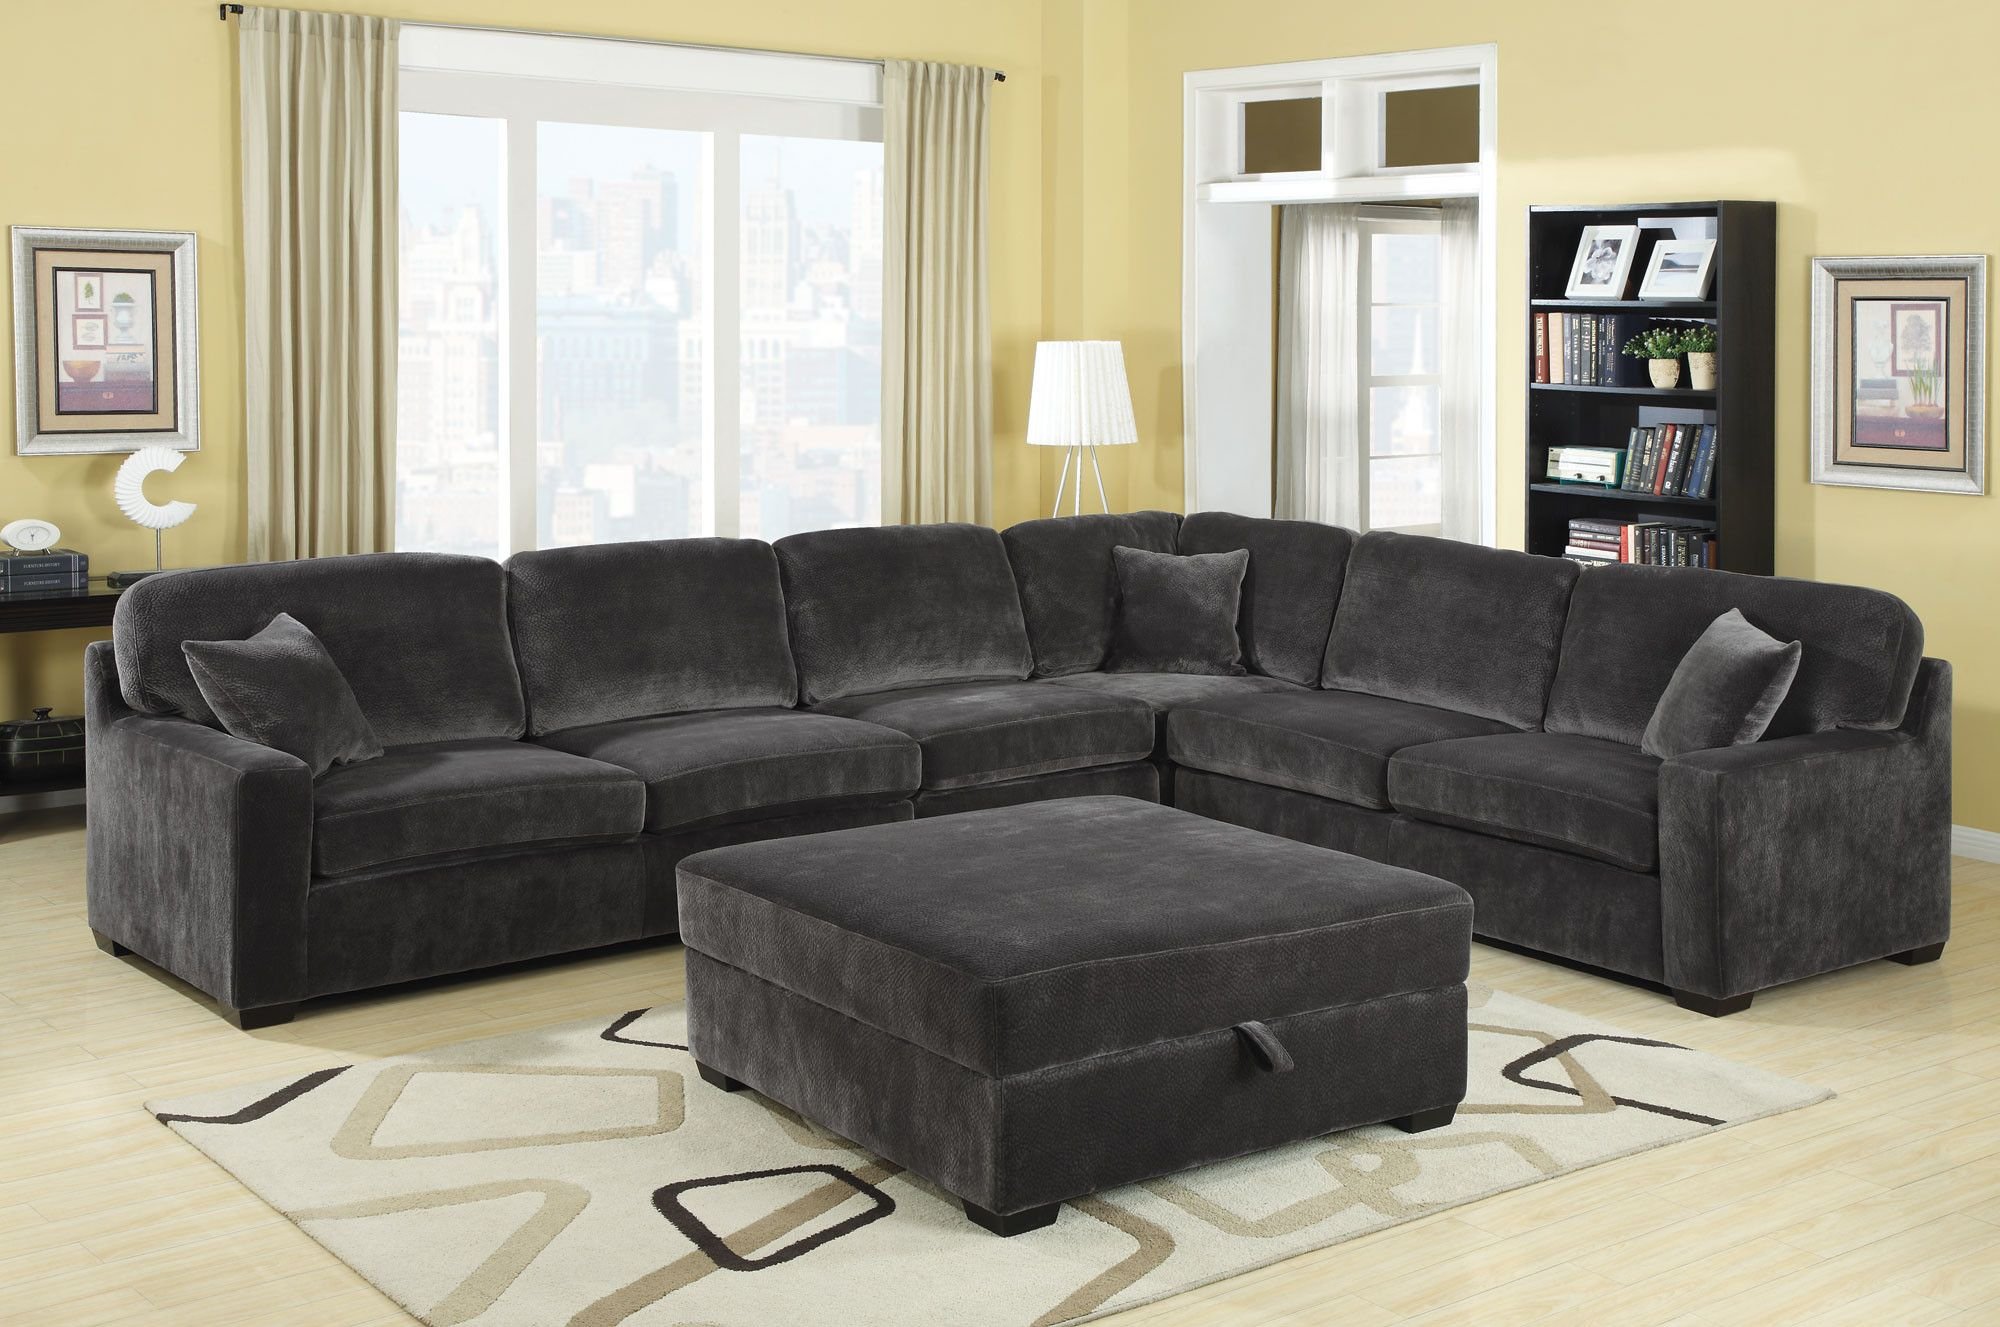 Угловые диваны хорошего качества. Noah Sectional диван. Большие диваны для гостиной. Диван угловой большой. Огромный диван в гостиную.